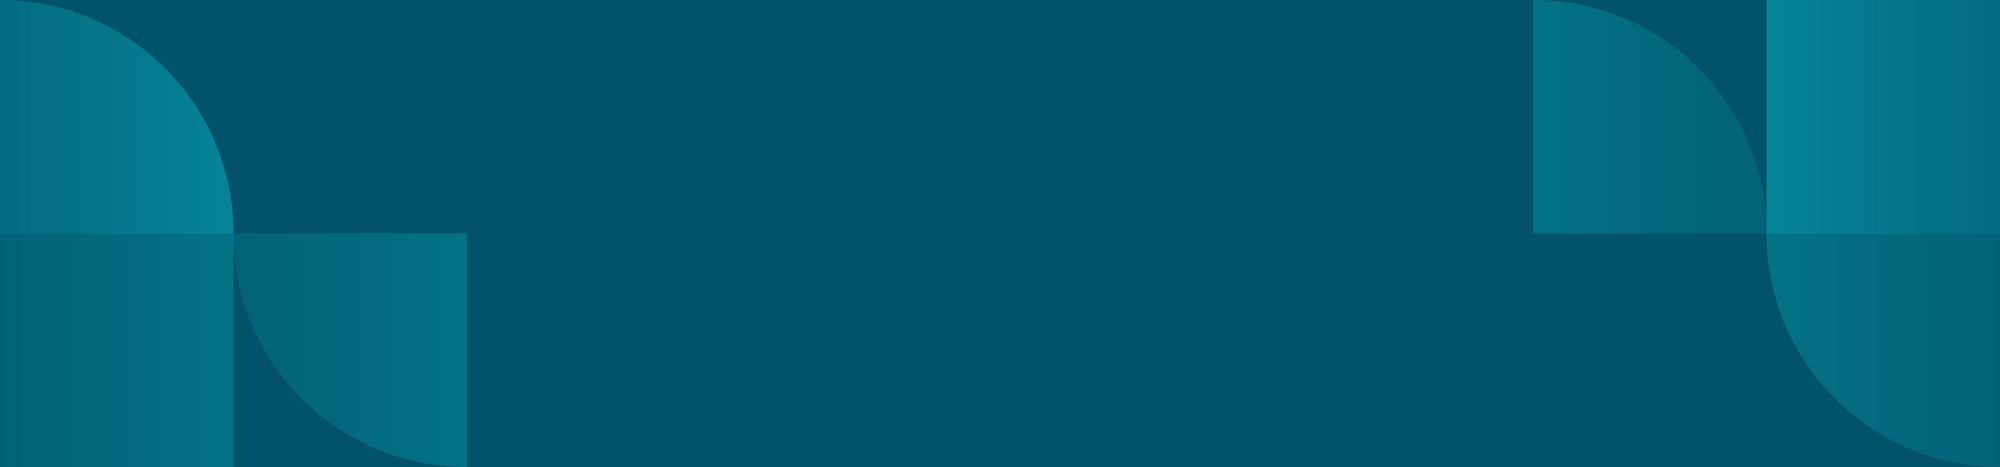 Custobar dark blue background